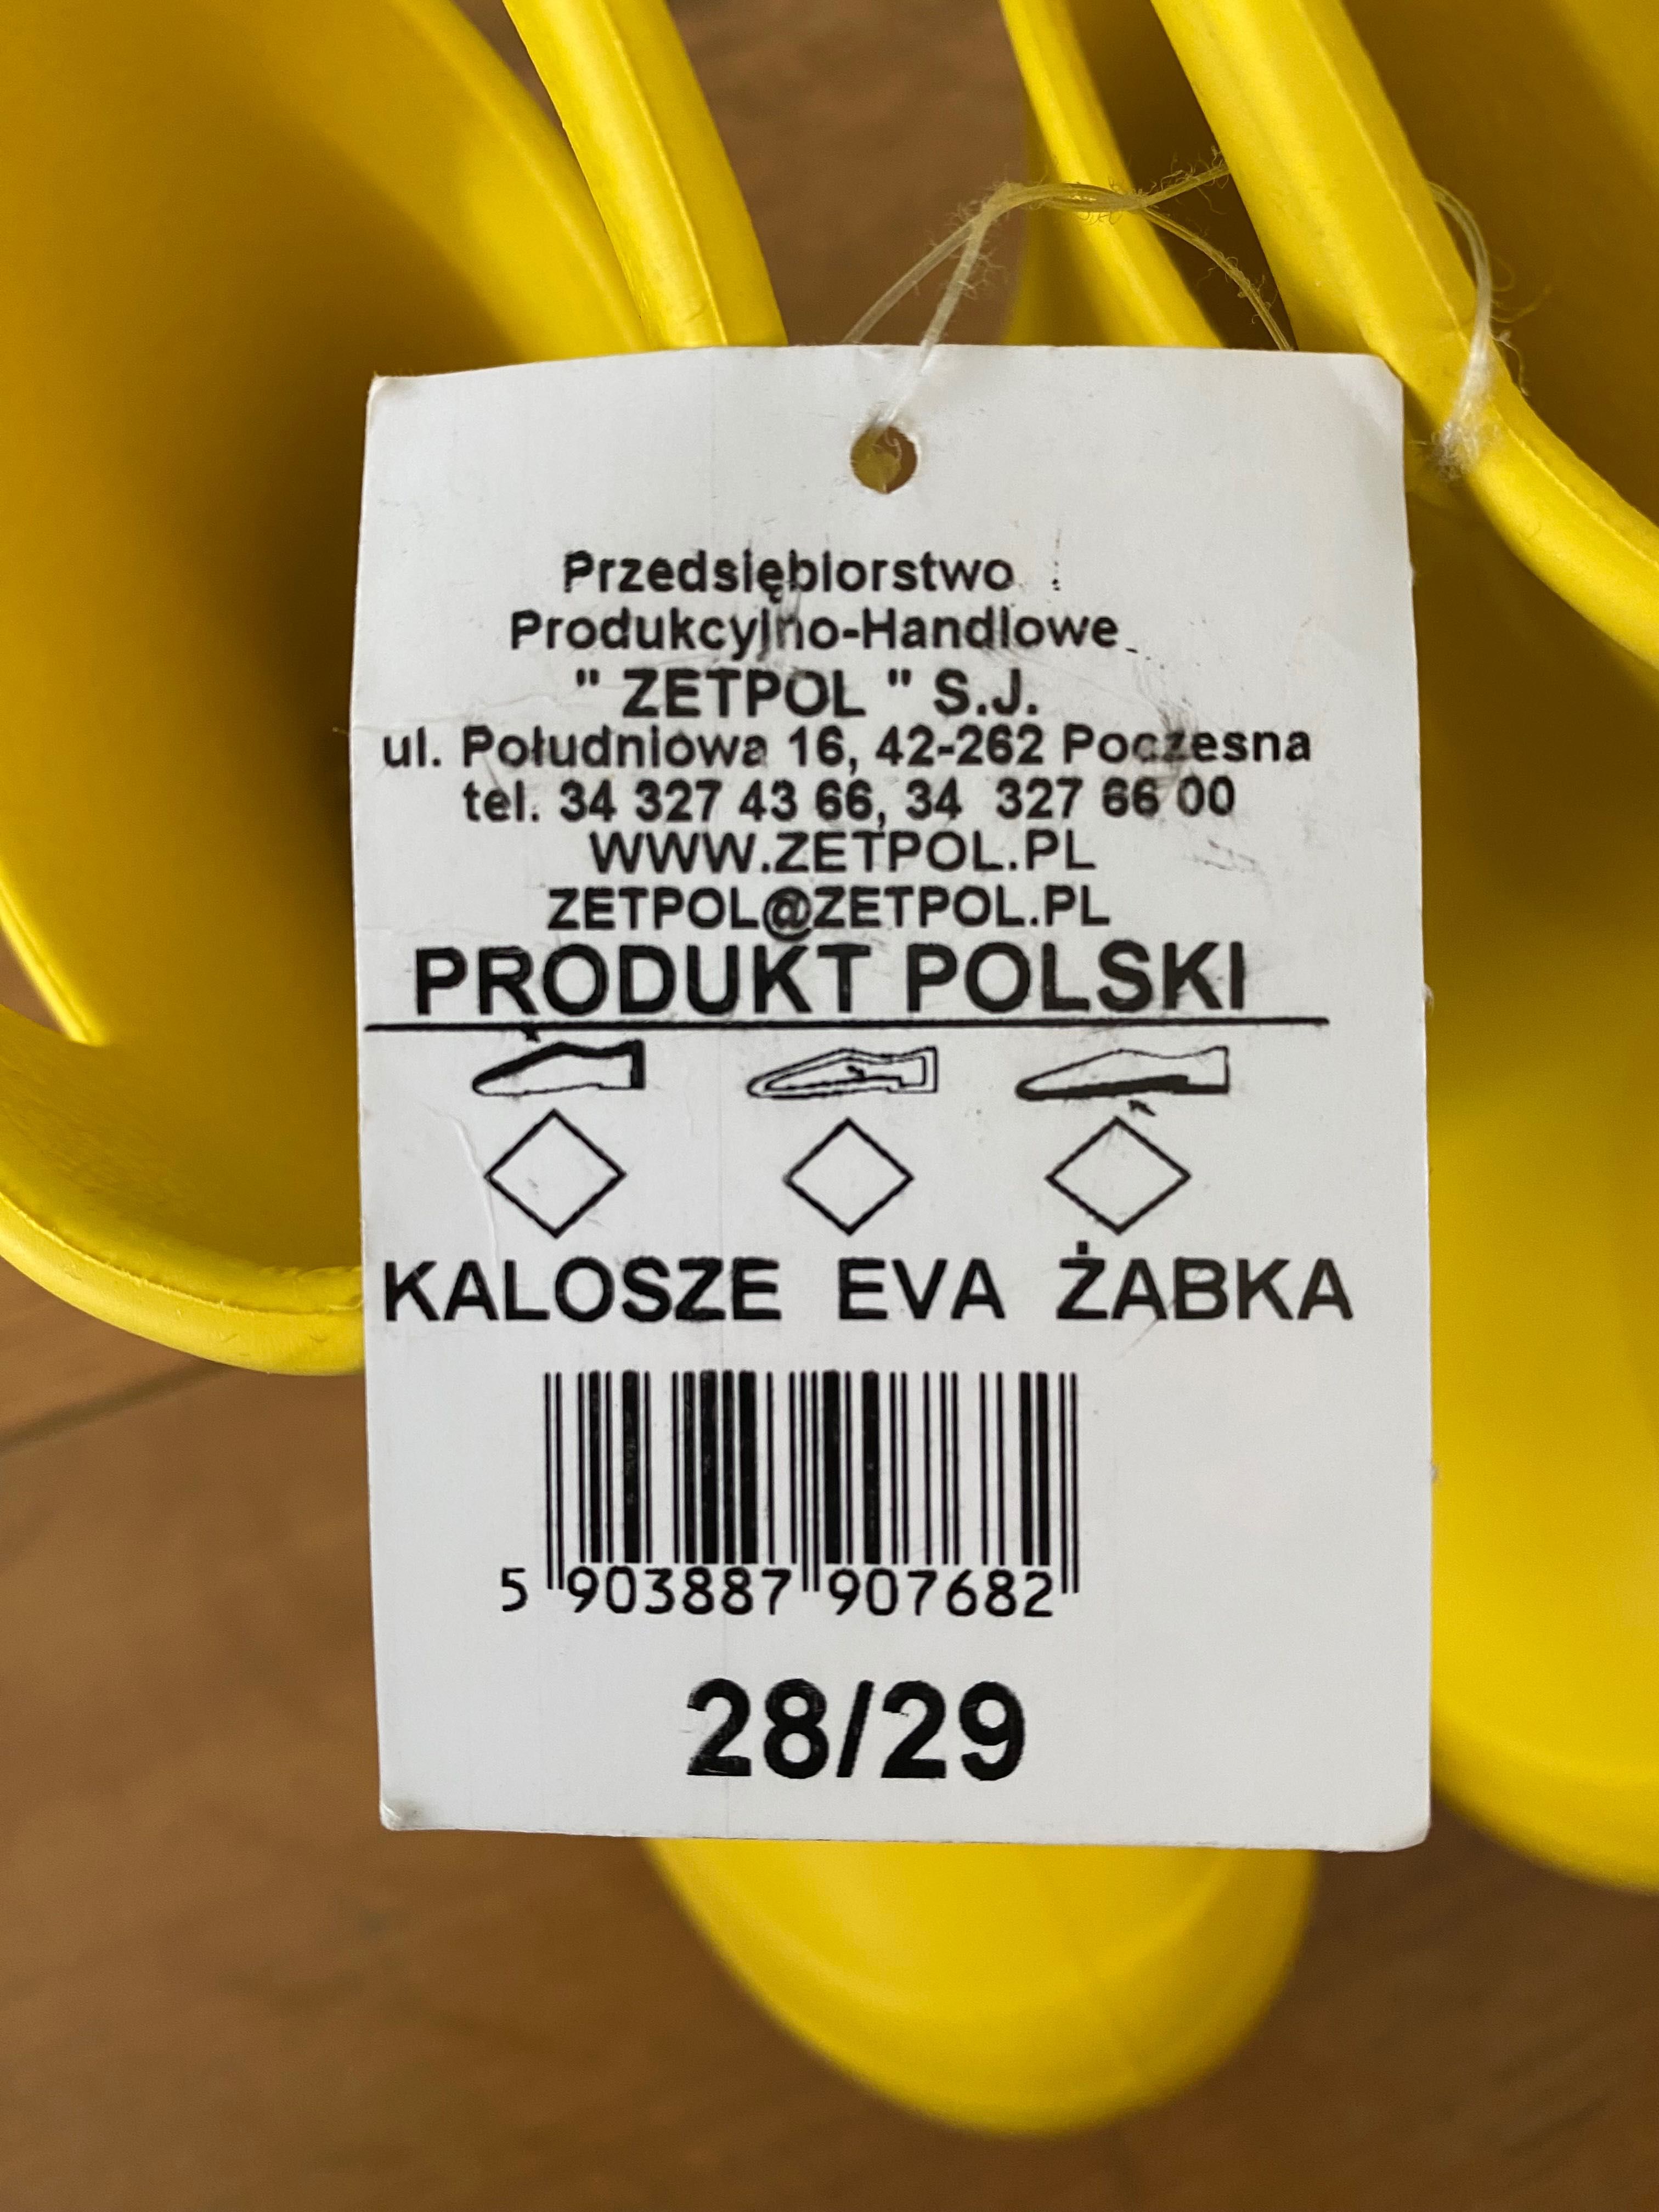 Kalosze żółte, nowe, EVA Żabka 28/29 Zetpol antybakteryjna wkladka